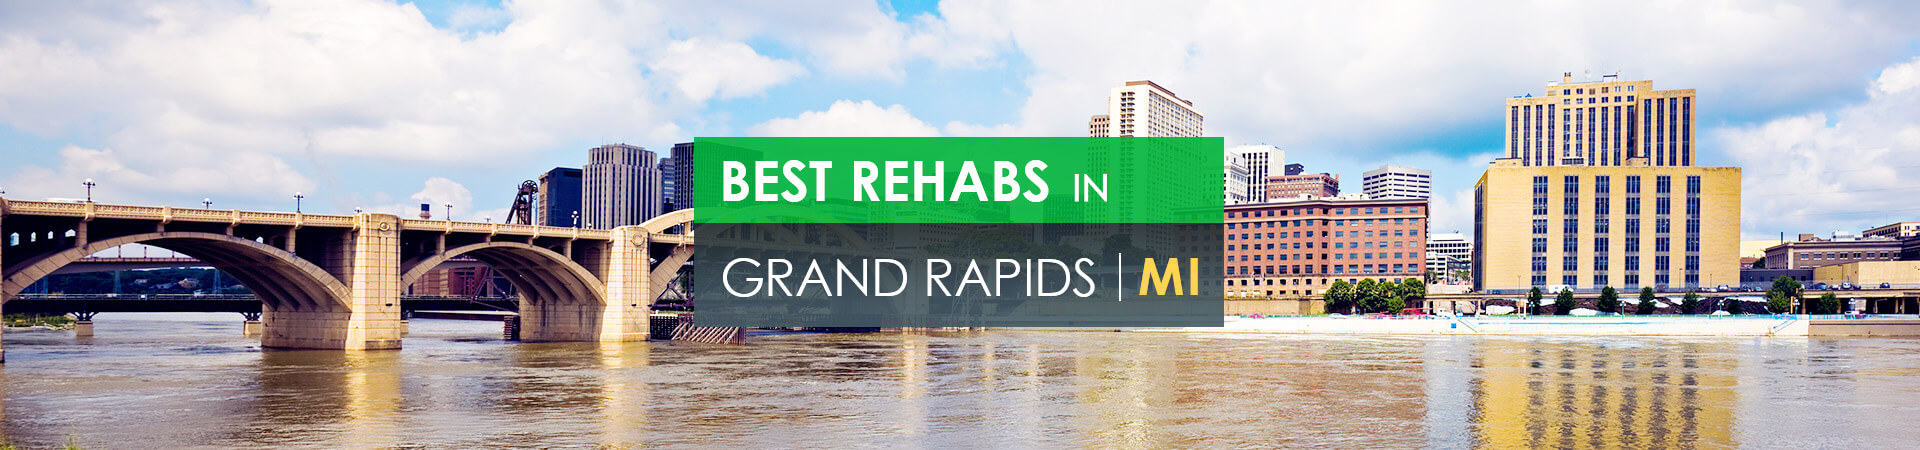 Best rehabs in Grand Rapids, MI